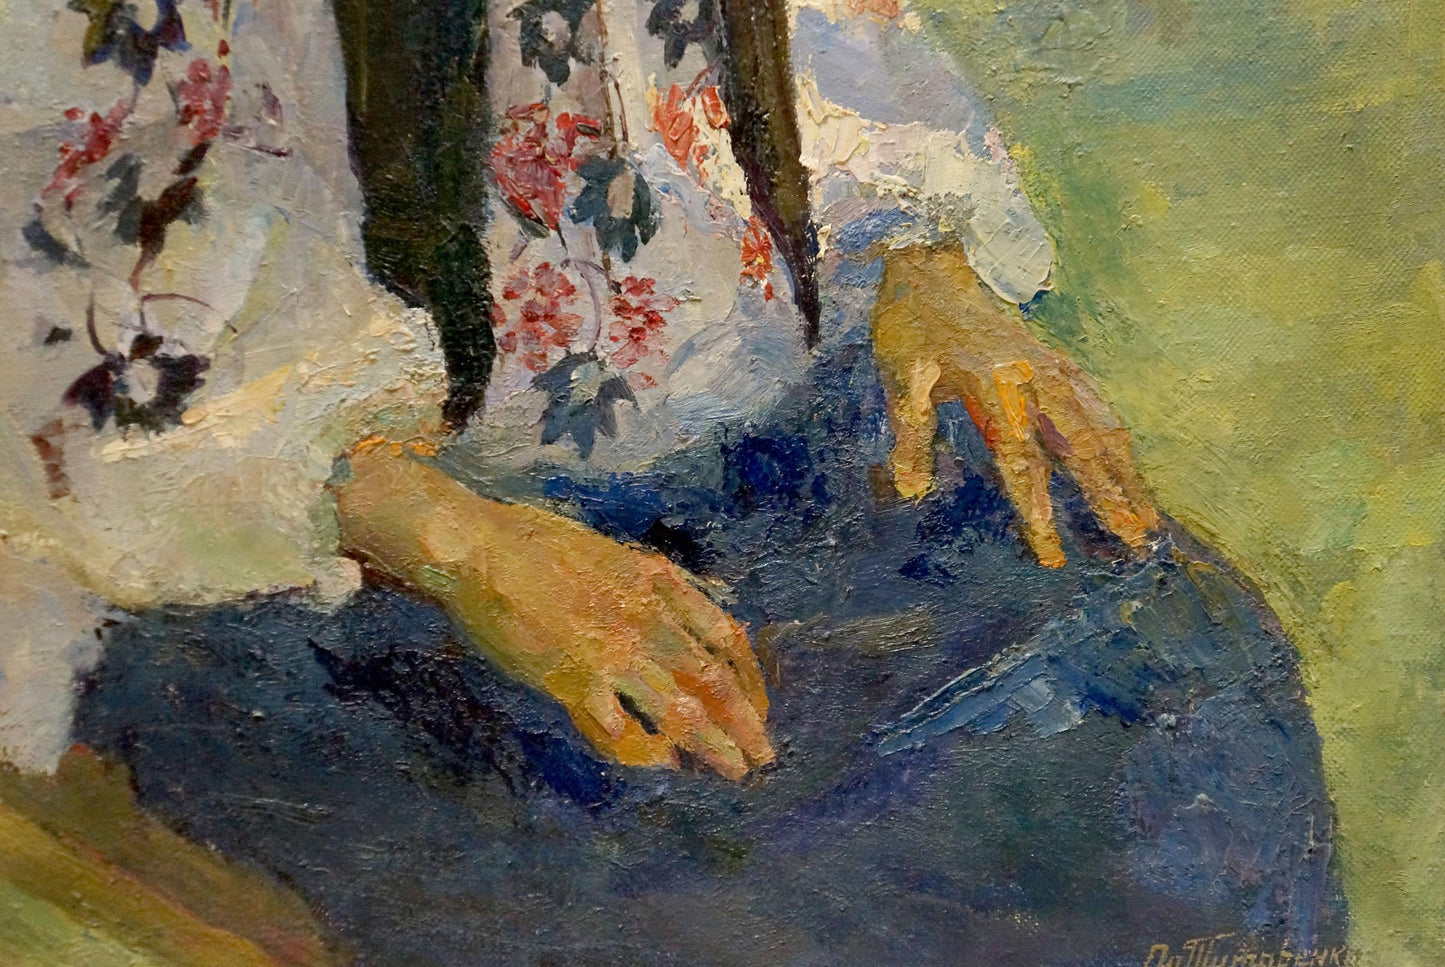 Within the oil painting, Odarka Anatoliivna Tytarenko illustrates the character of a grandmother